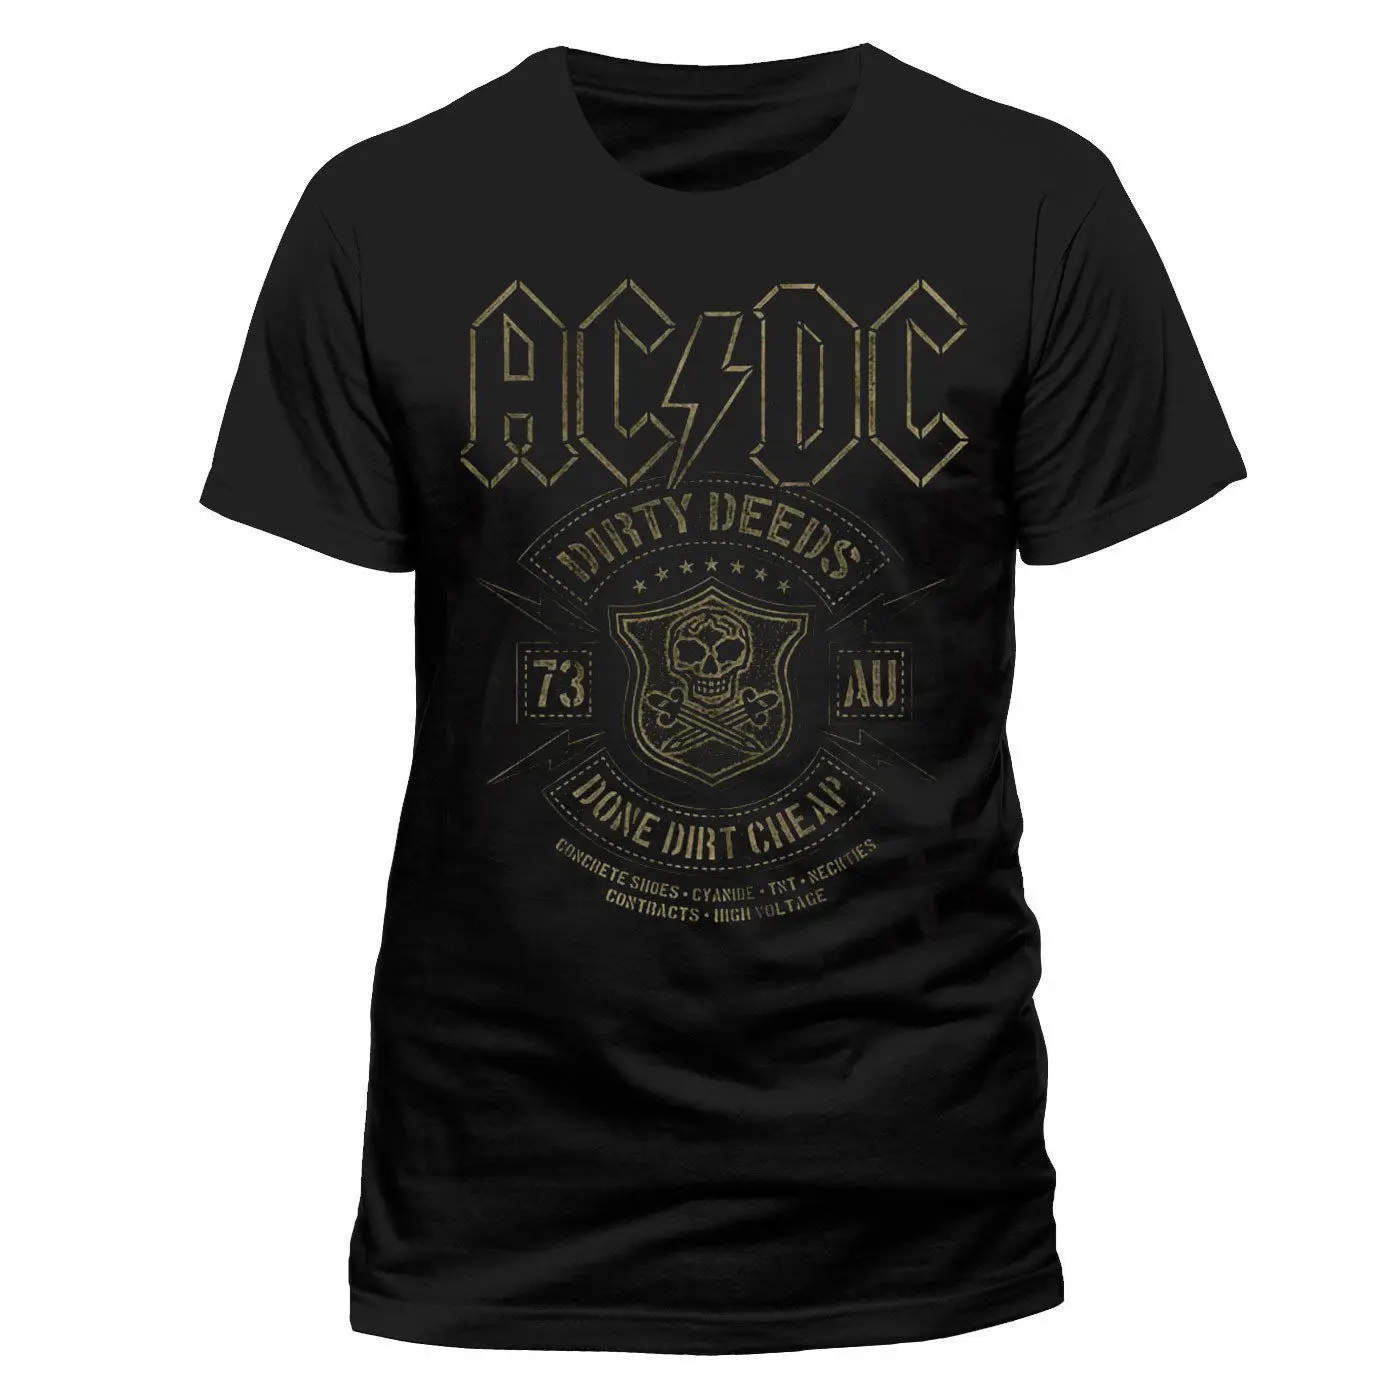 Acdc Лицензированная Dirty deades Done дешевая рок-футболка в стиле хеви-метал, мужская летняя футболка с короткими рукавами и рисунком, модная футболка